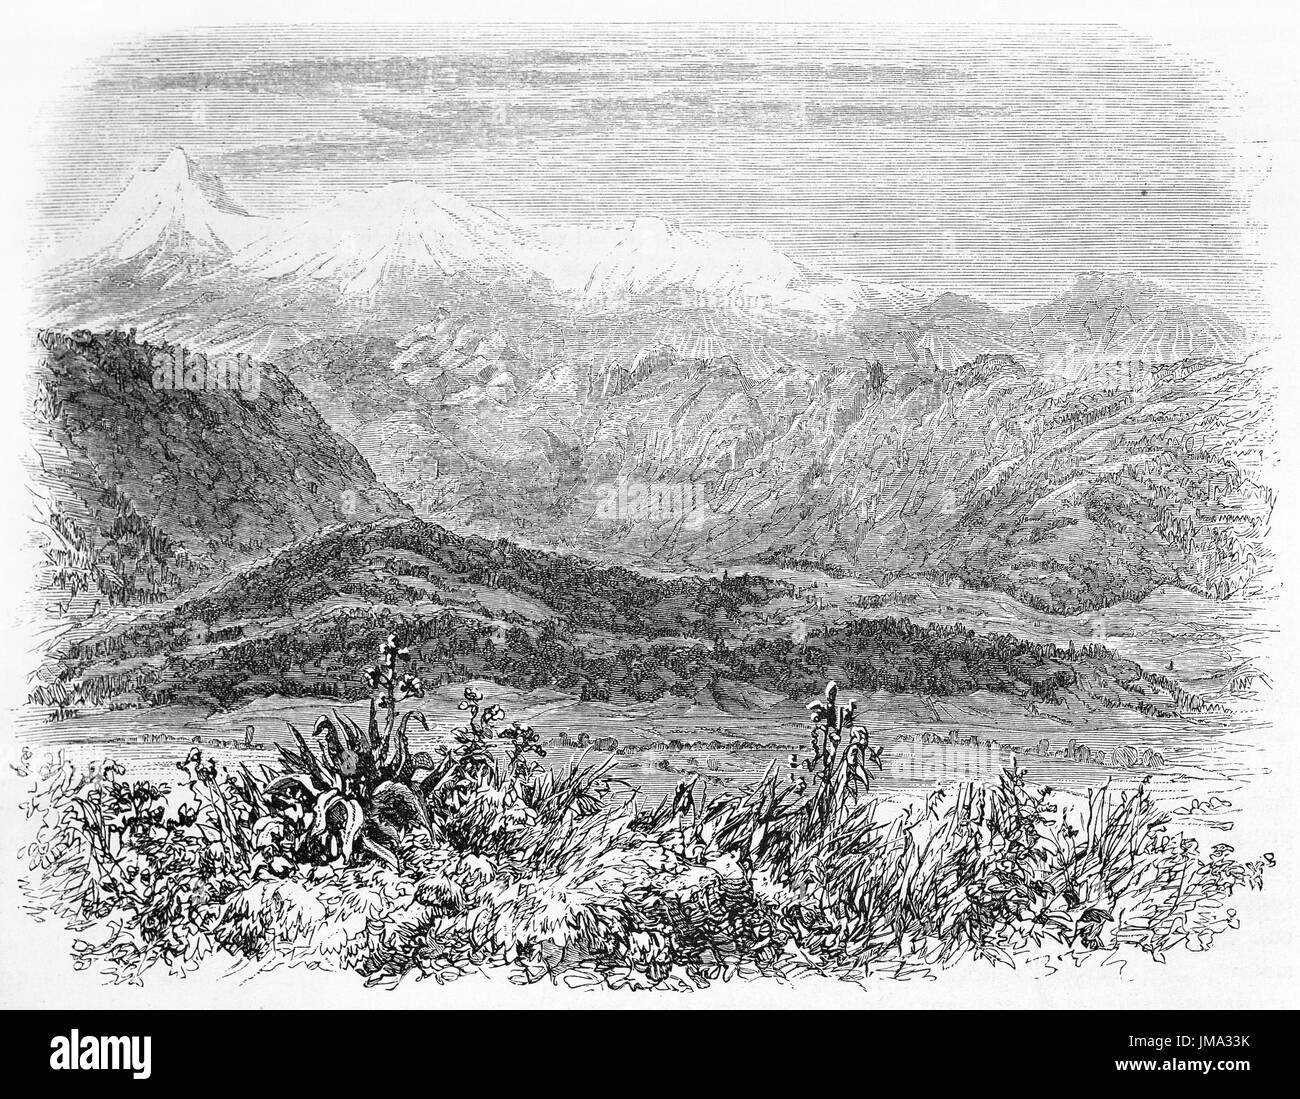 Vue ancienne de l'Iztaccihuati mont, au Mexique. Créé par Sabatier et Maurand après Laveirière, publié sur le Tour du Monde, Paris, 1861 Banque D'Images